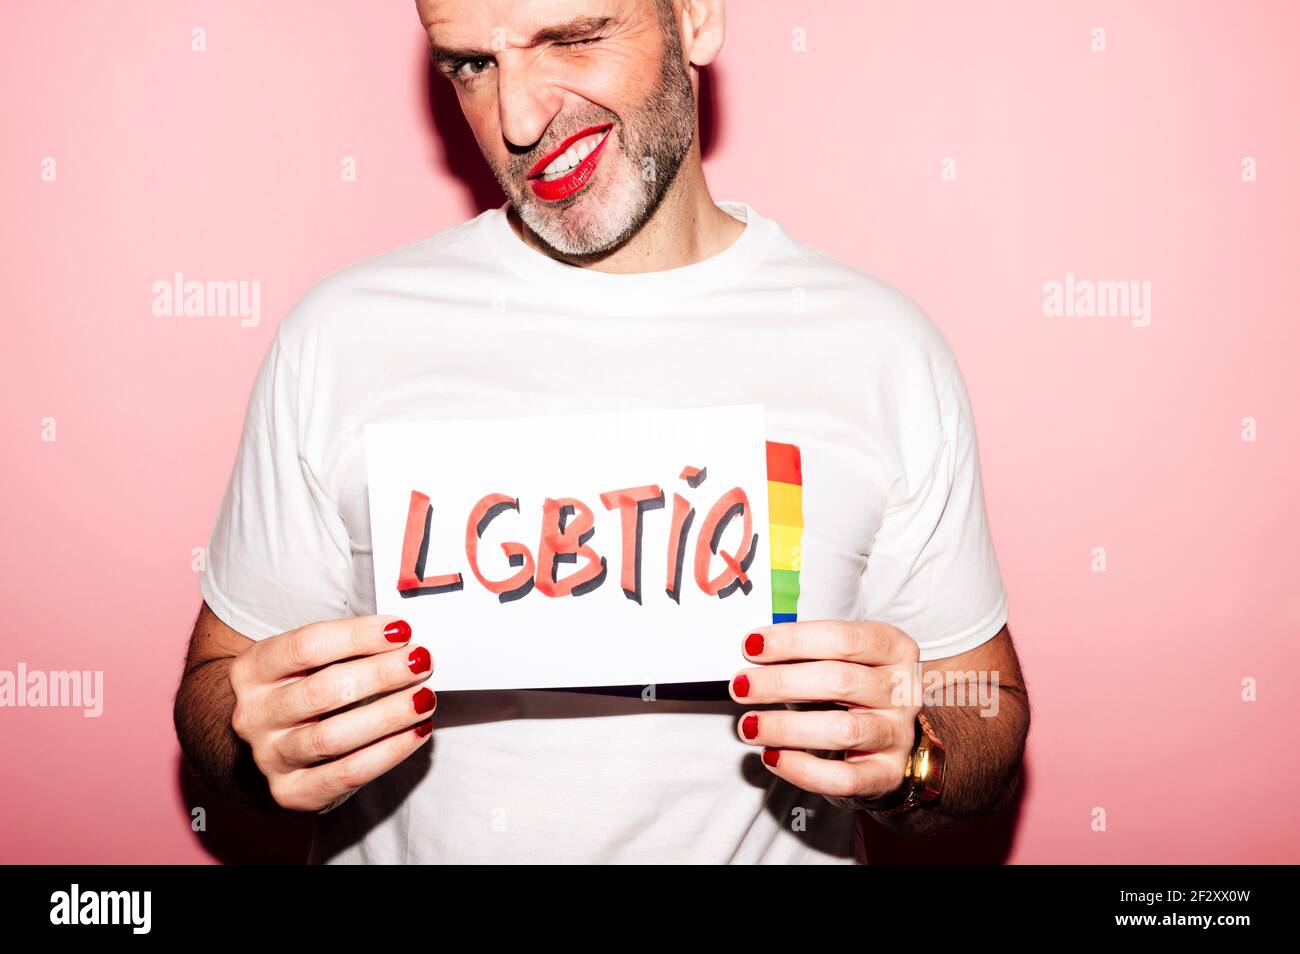 Crop rebellischen bärtigen homosexuellen Mann mit roten Lippen und Maniküre Erstellen von Grimasse beim Anzeigen von Papier mit LGBTIQ-Text gegen Rosa Hintergrund Stockfoto